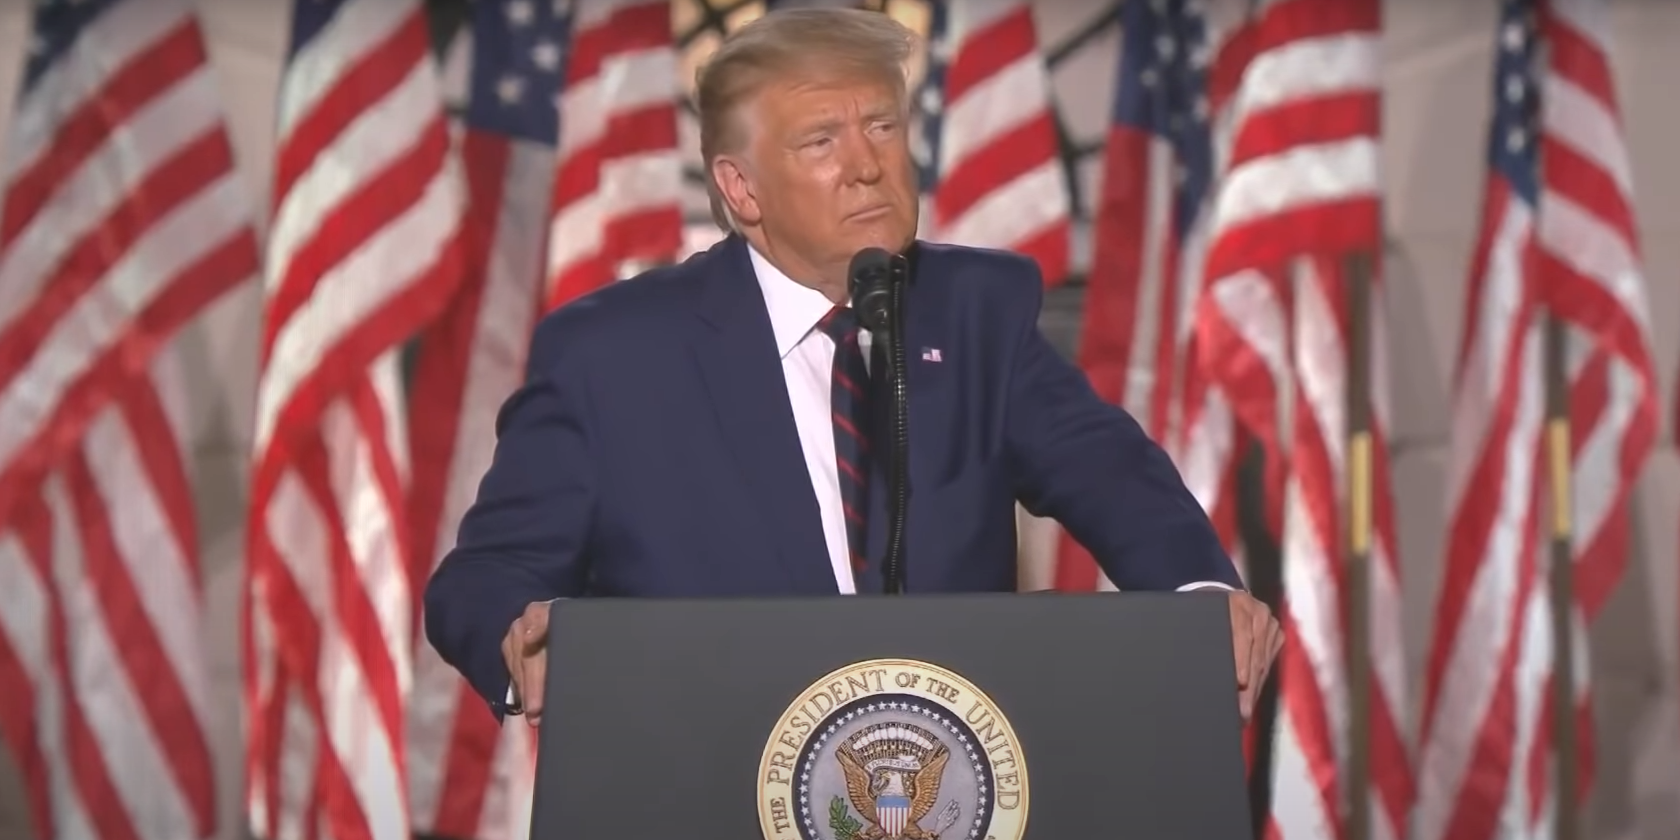 Trump making speech